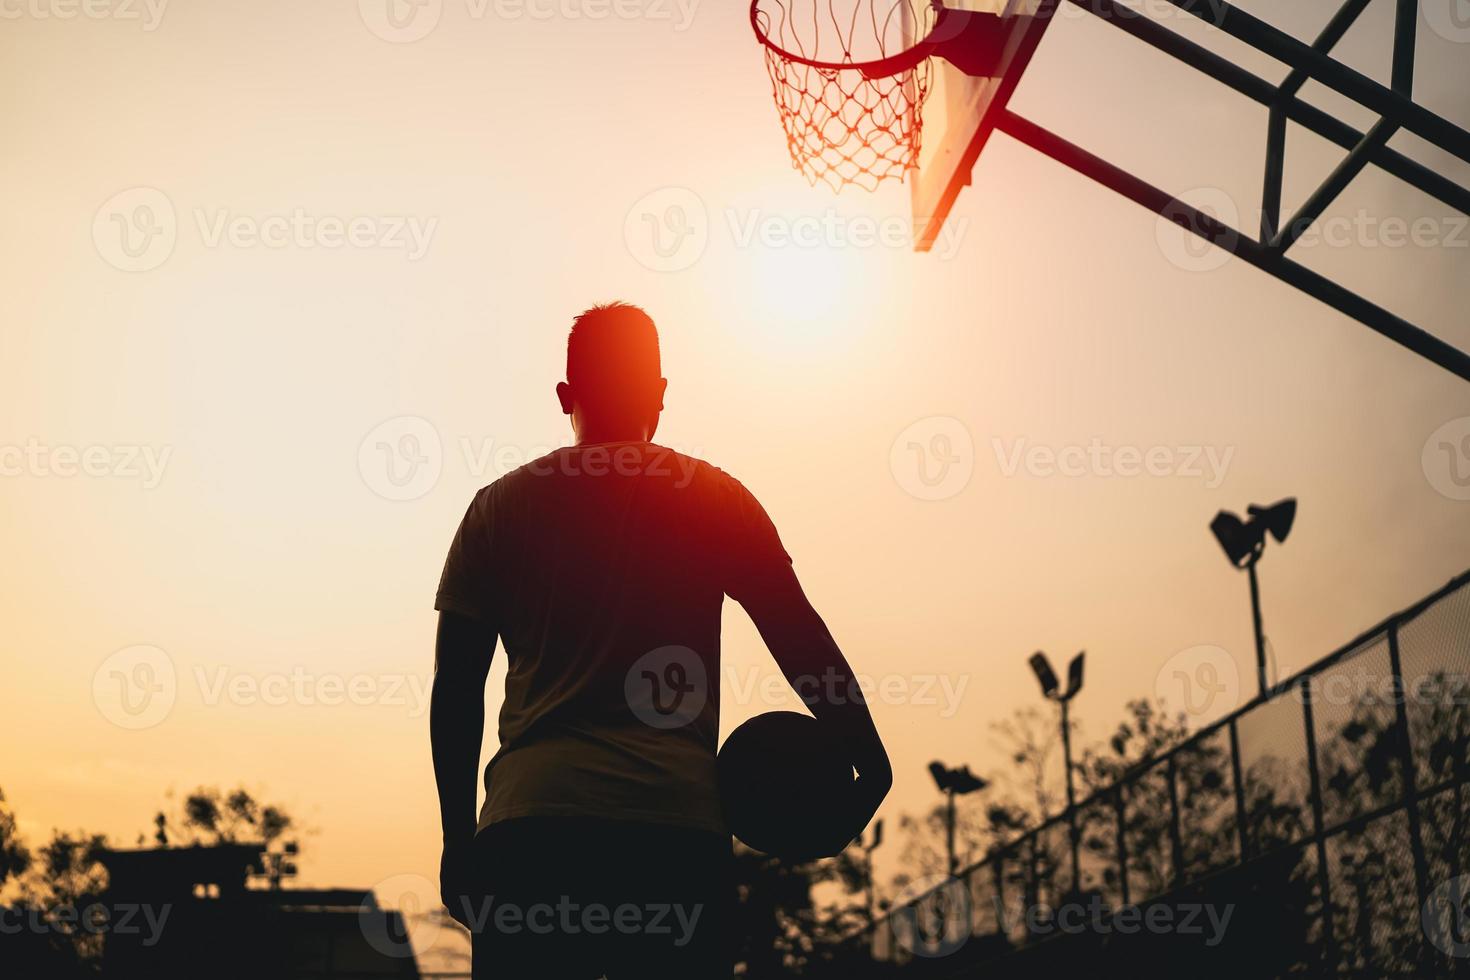 basketbal speler silhouet bij zonsondergang. basketbalspeler schiet een schot. sport basketbal concept. foto